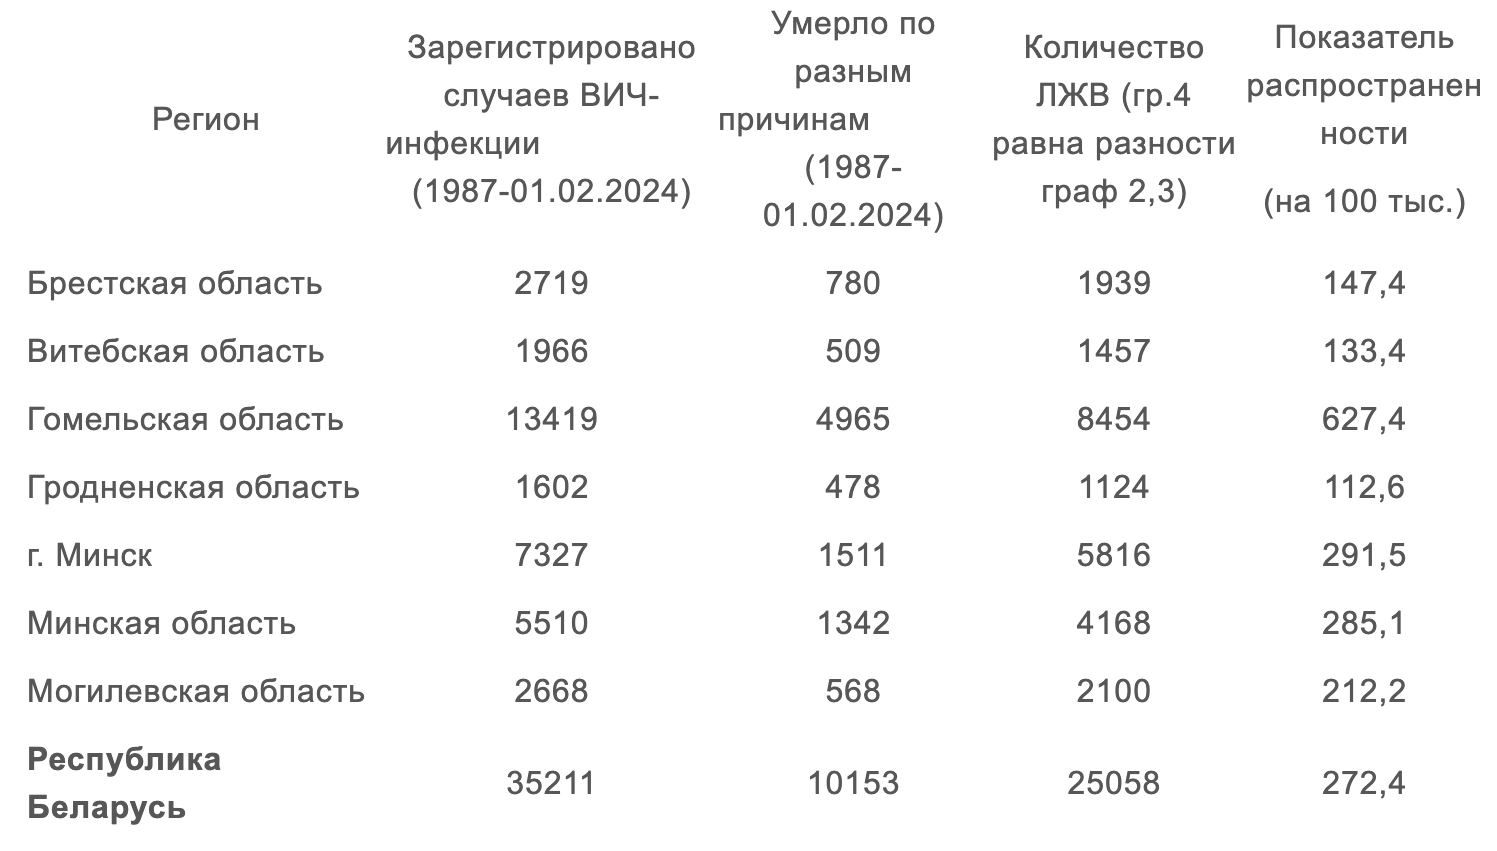 107 новых случаев ВИЧ выявлено за первый месяц 2024 года в Беларуси